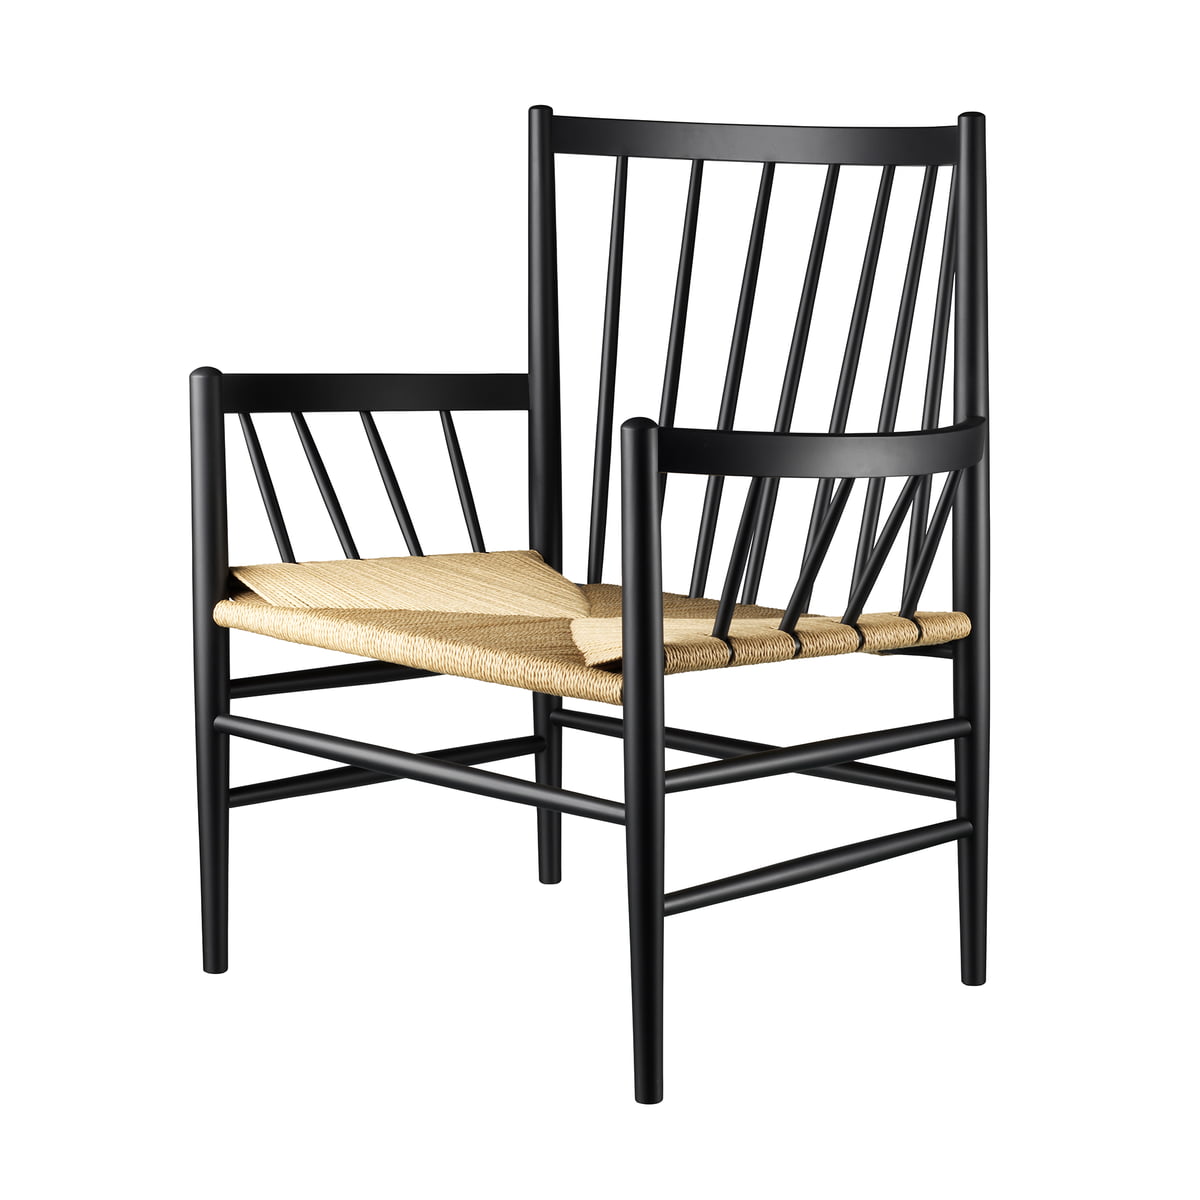 Fdb møbler - J82 lounge chair, matt lacquered oak / natural wickerwork